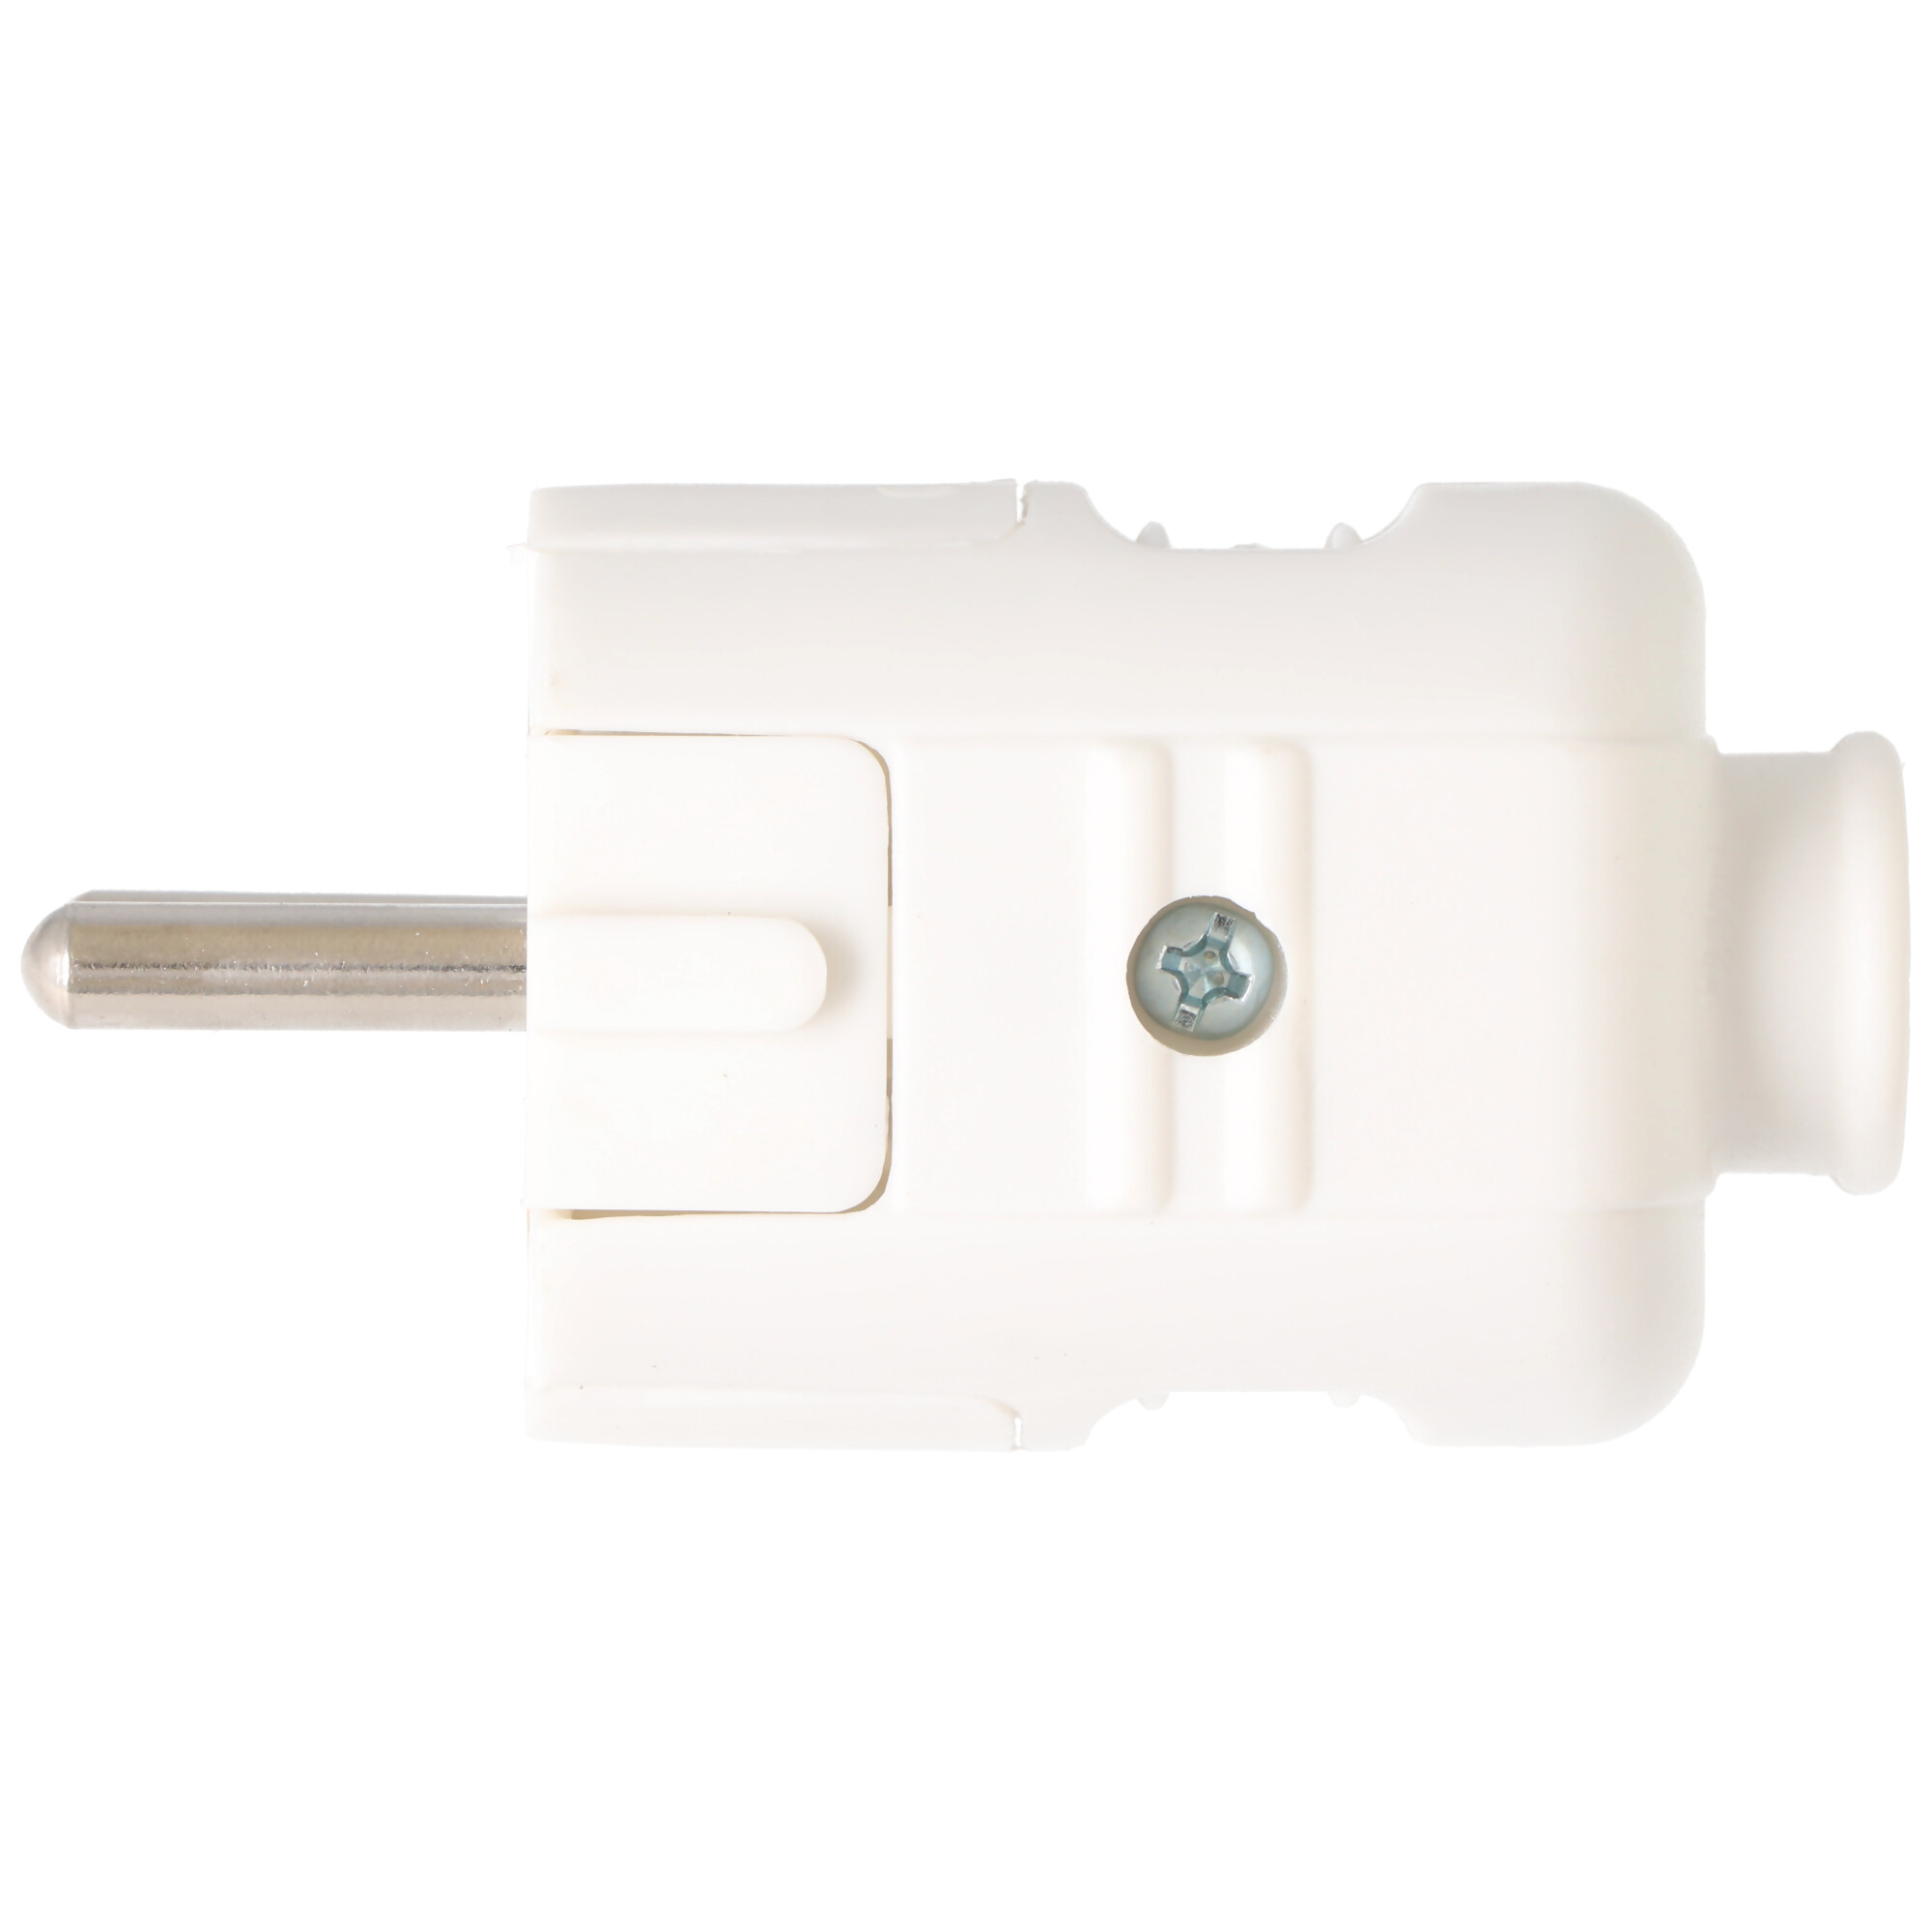 Schukostecker weiß, Schutzkontaktstecker weiss, Schuko-Stecker mit Zugentlastung IP44 16A 250V, mit doppeltem Schutzkontakt